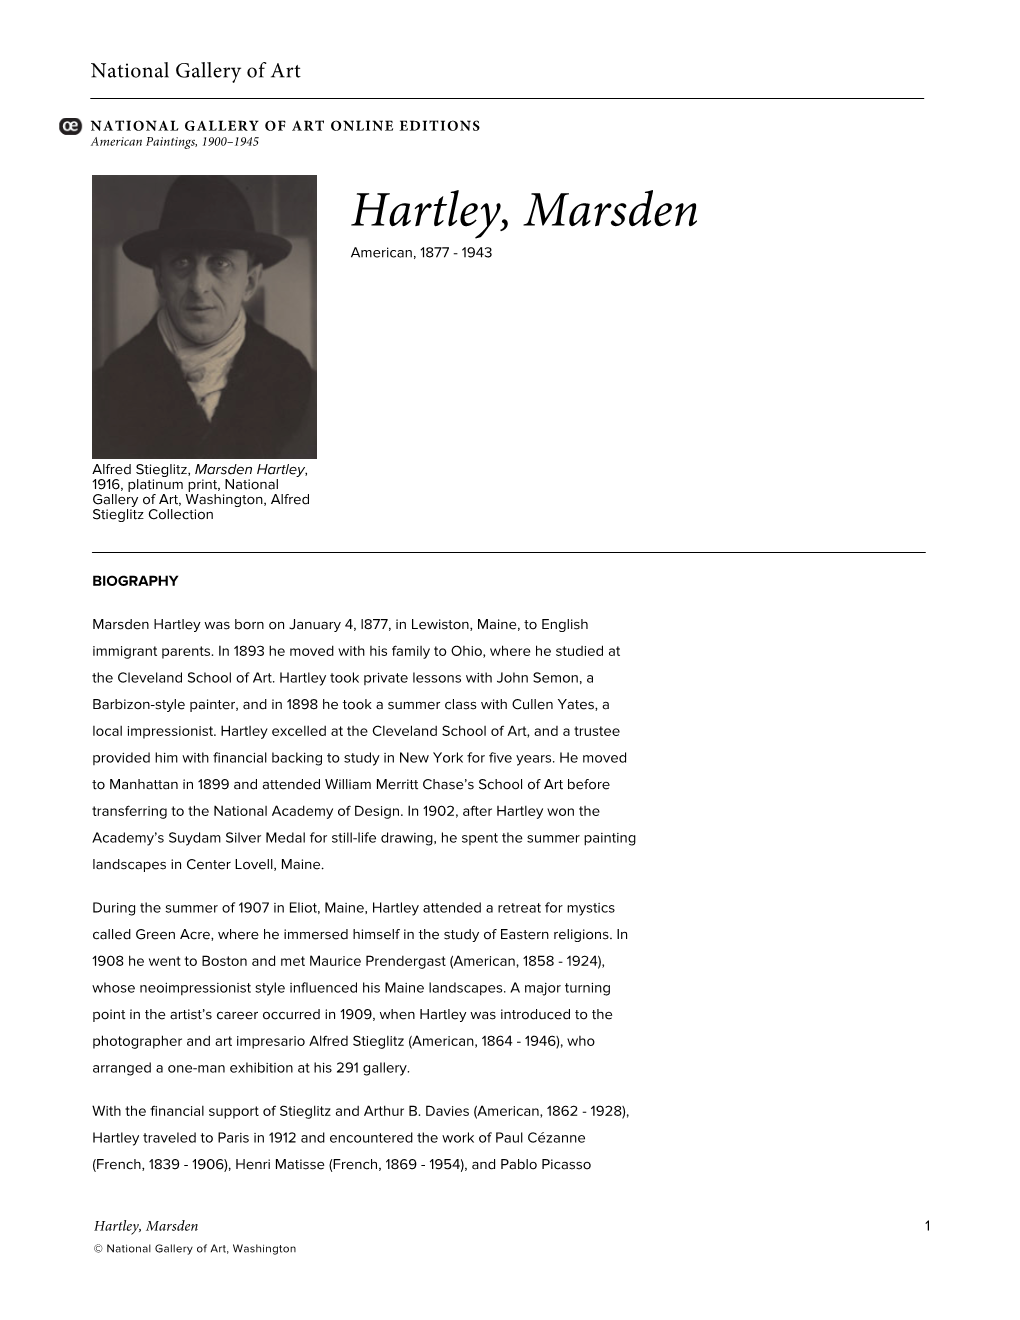 Hartley, Marsden American, 1877 - 1943